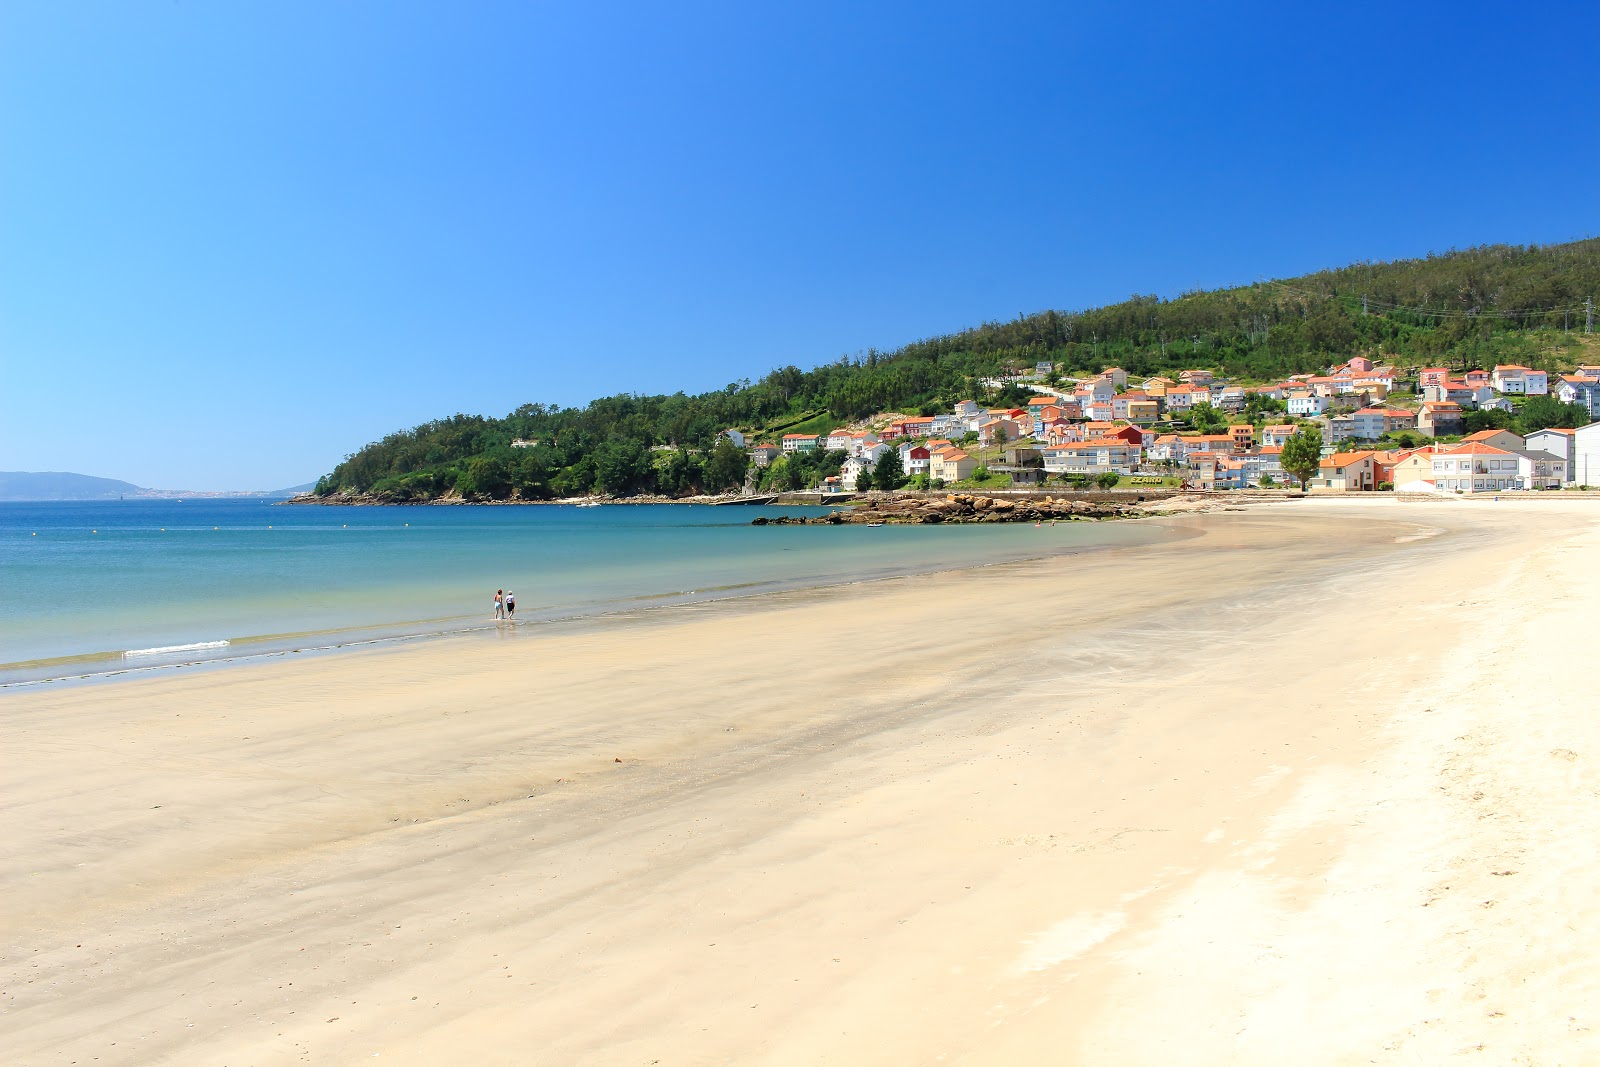 Fotografie cu Praia do Ezaro cu o suprafață de nisip alb